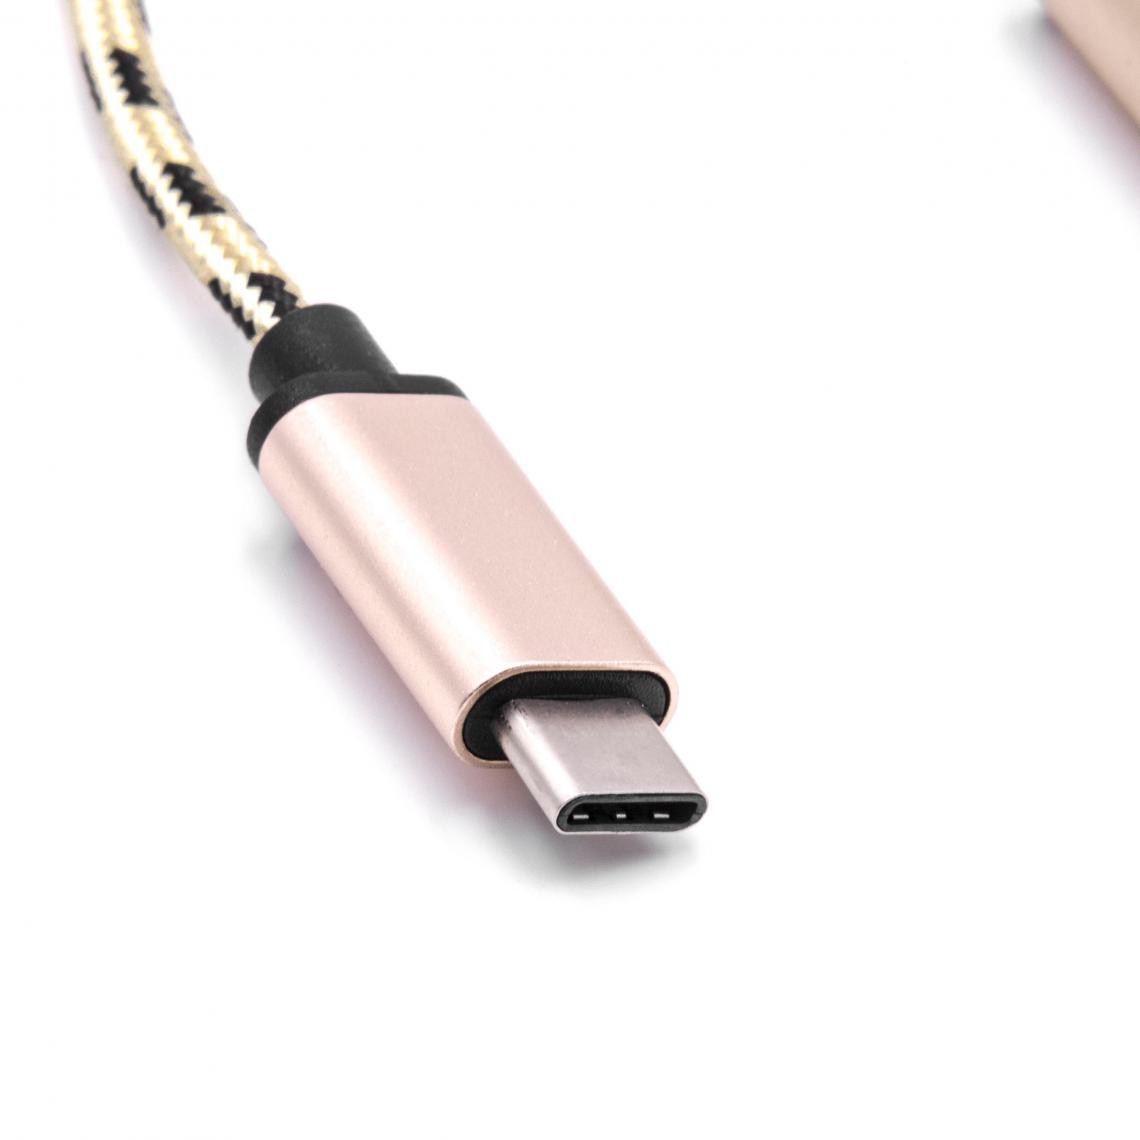 Vhbw - vhbw câble adaptateur USB type C sur USB 2.0 pour LG G5, G6, V20, V30 - Accessoires alimentation